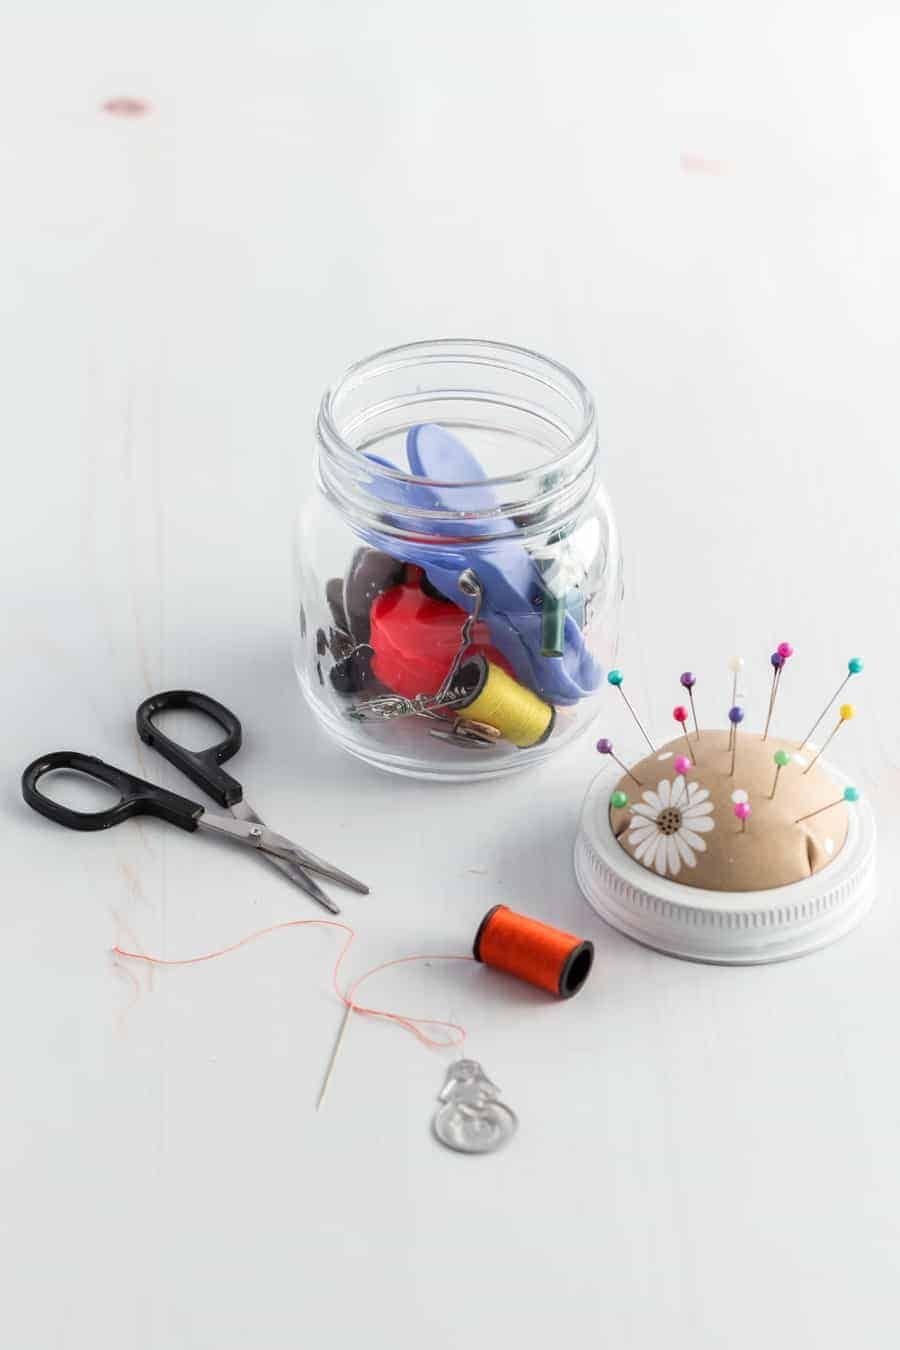 Diy sewing kit in a jar